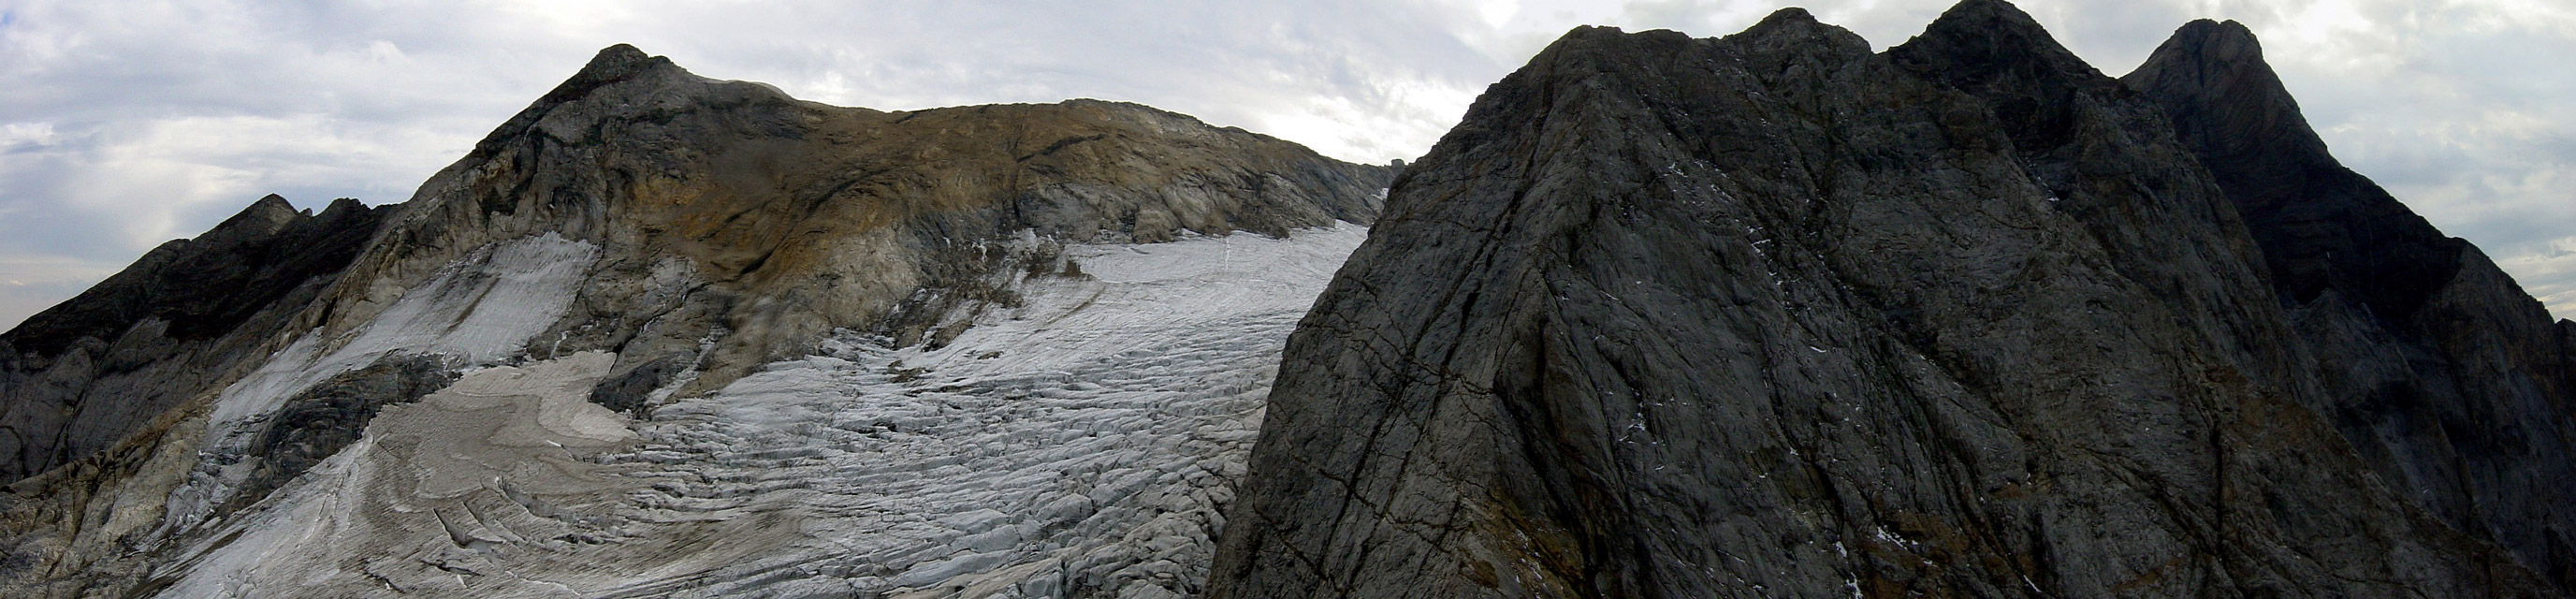 Vista del glaciar del Vignemale desde el Petit Vignemale (3032 m)